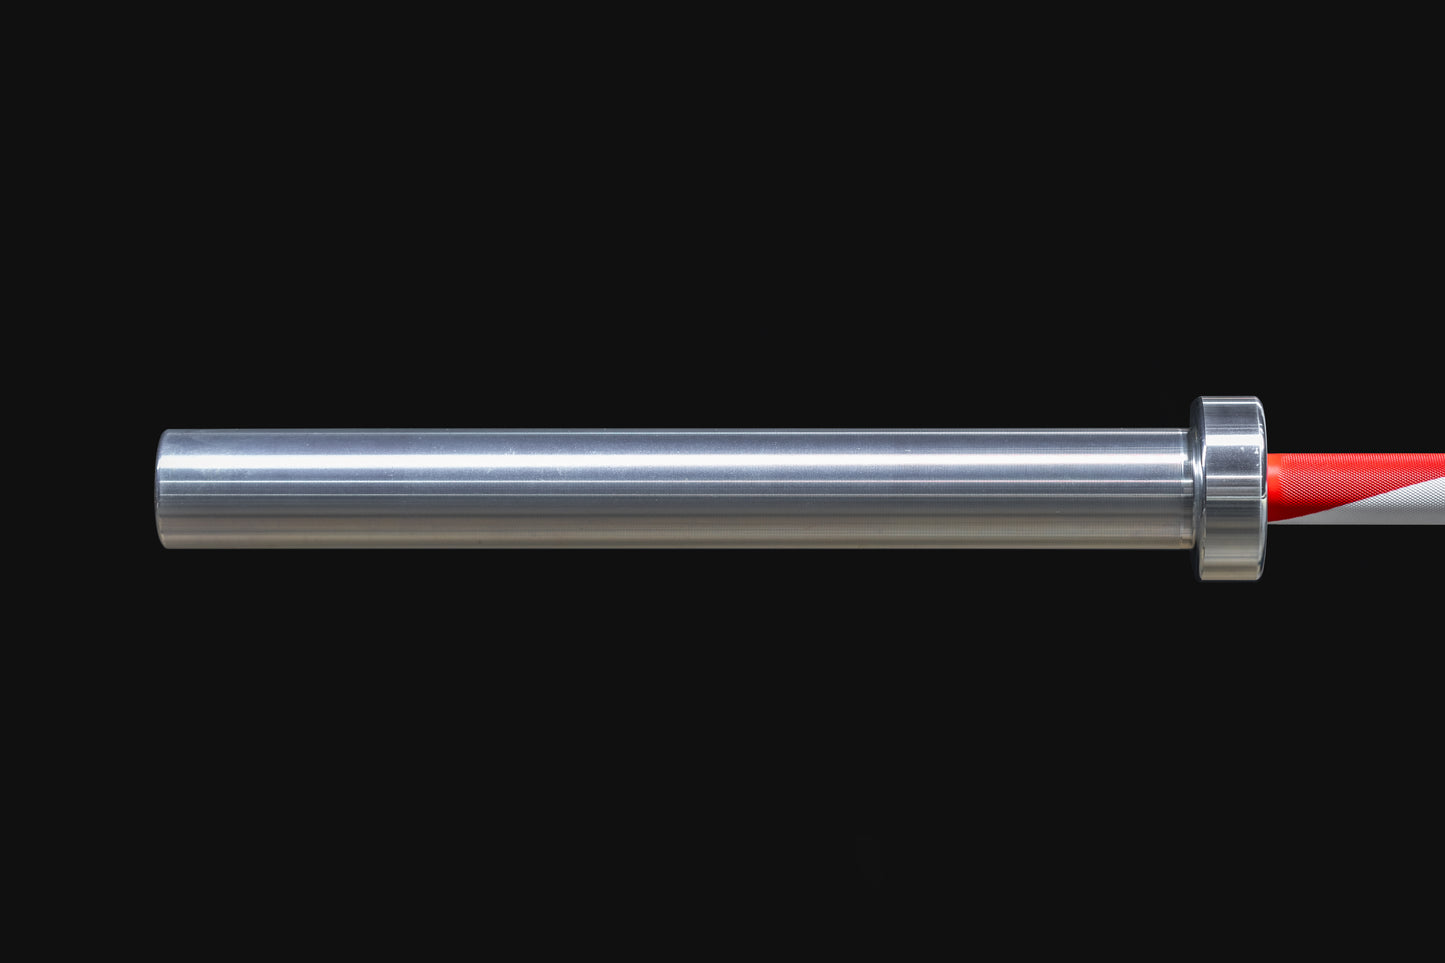 Semper Fidelis Olympic Barbell - 20KG (45LB)